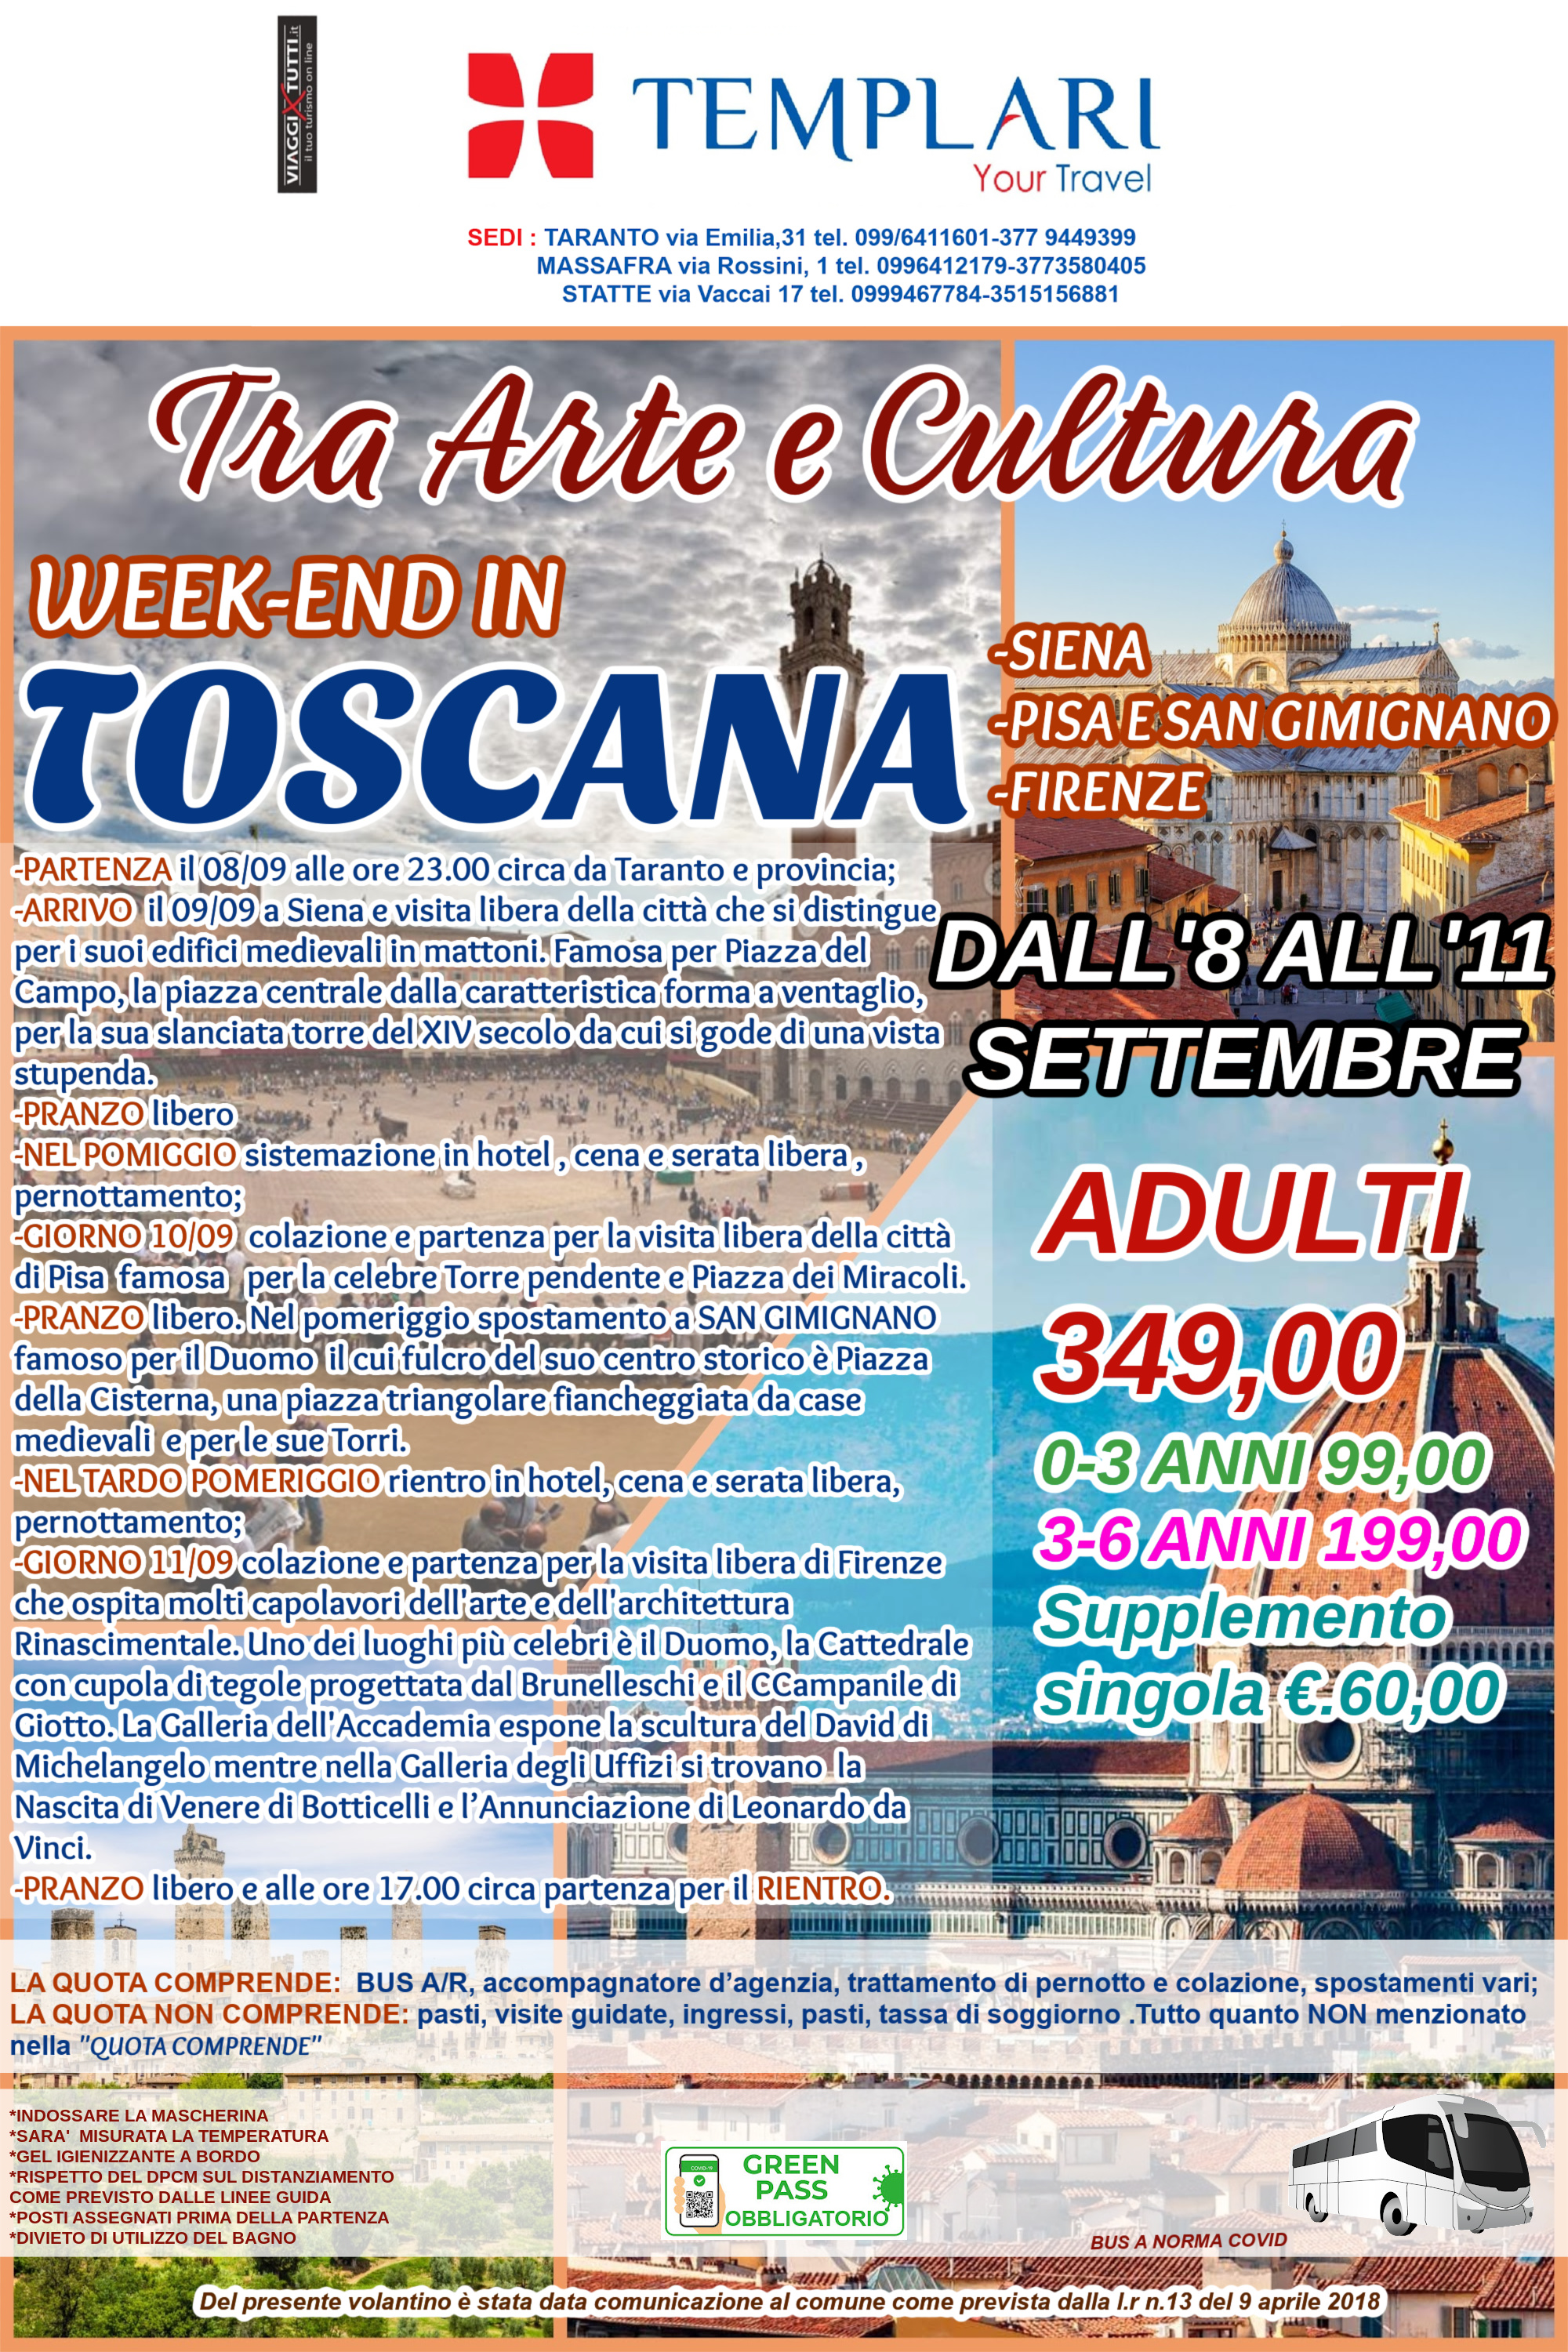 Tra arte e cultura week-end in Toscana